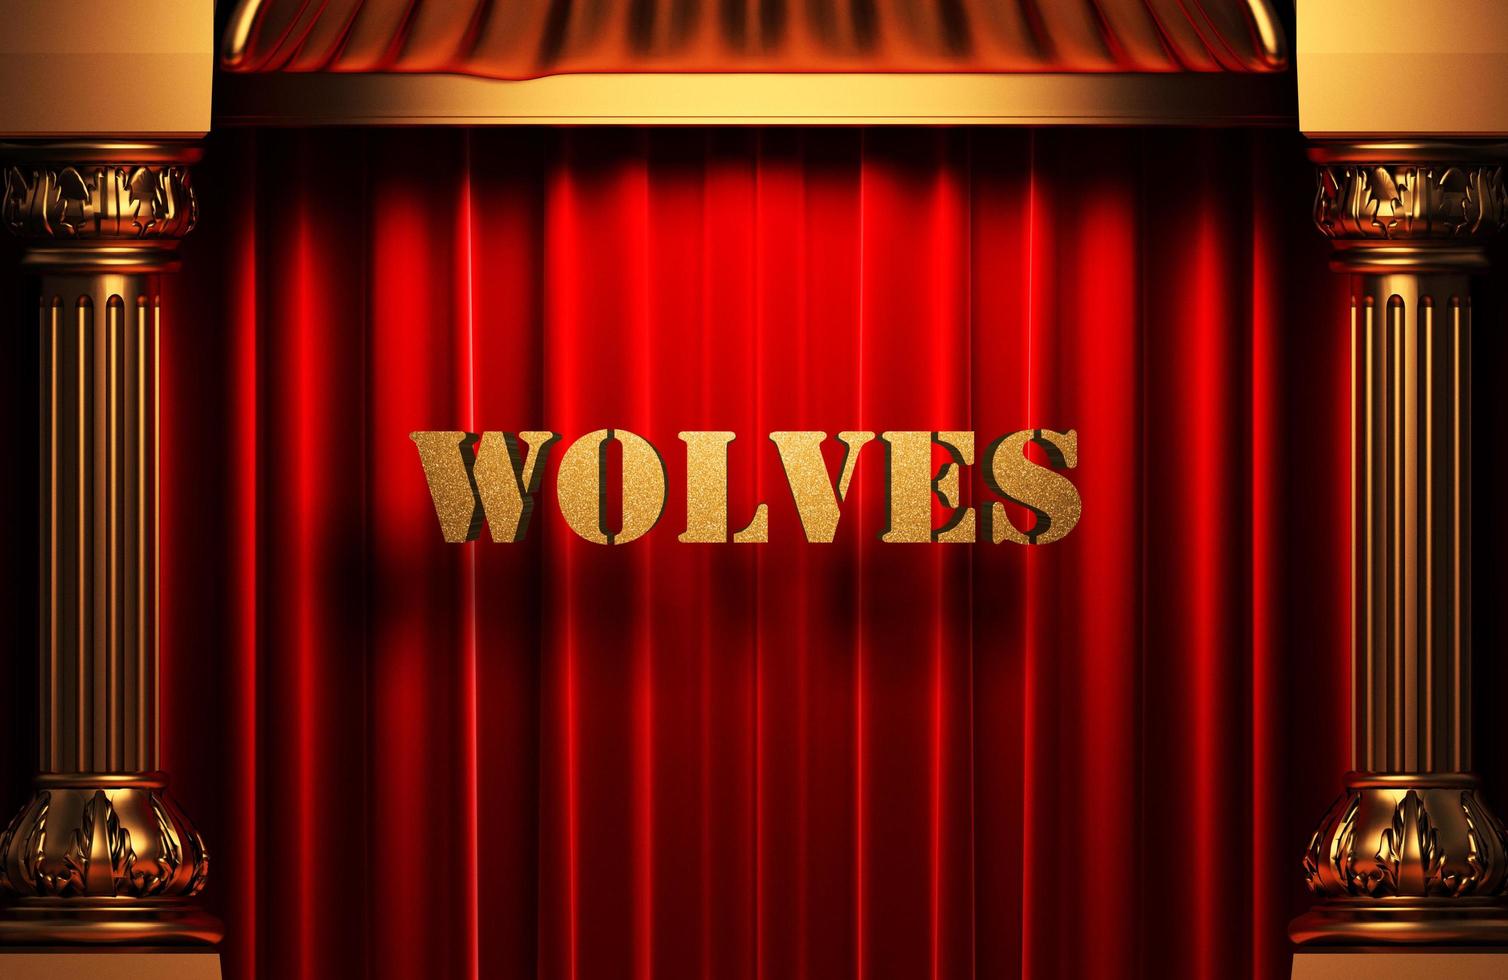 palavra dourada de lobos na cortina vermelha foto